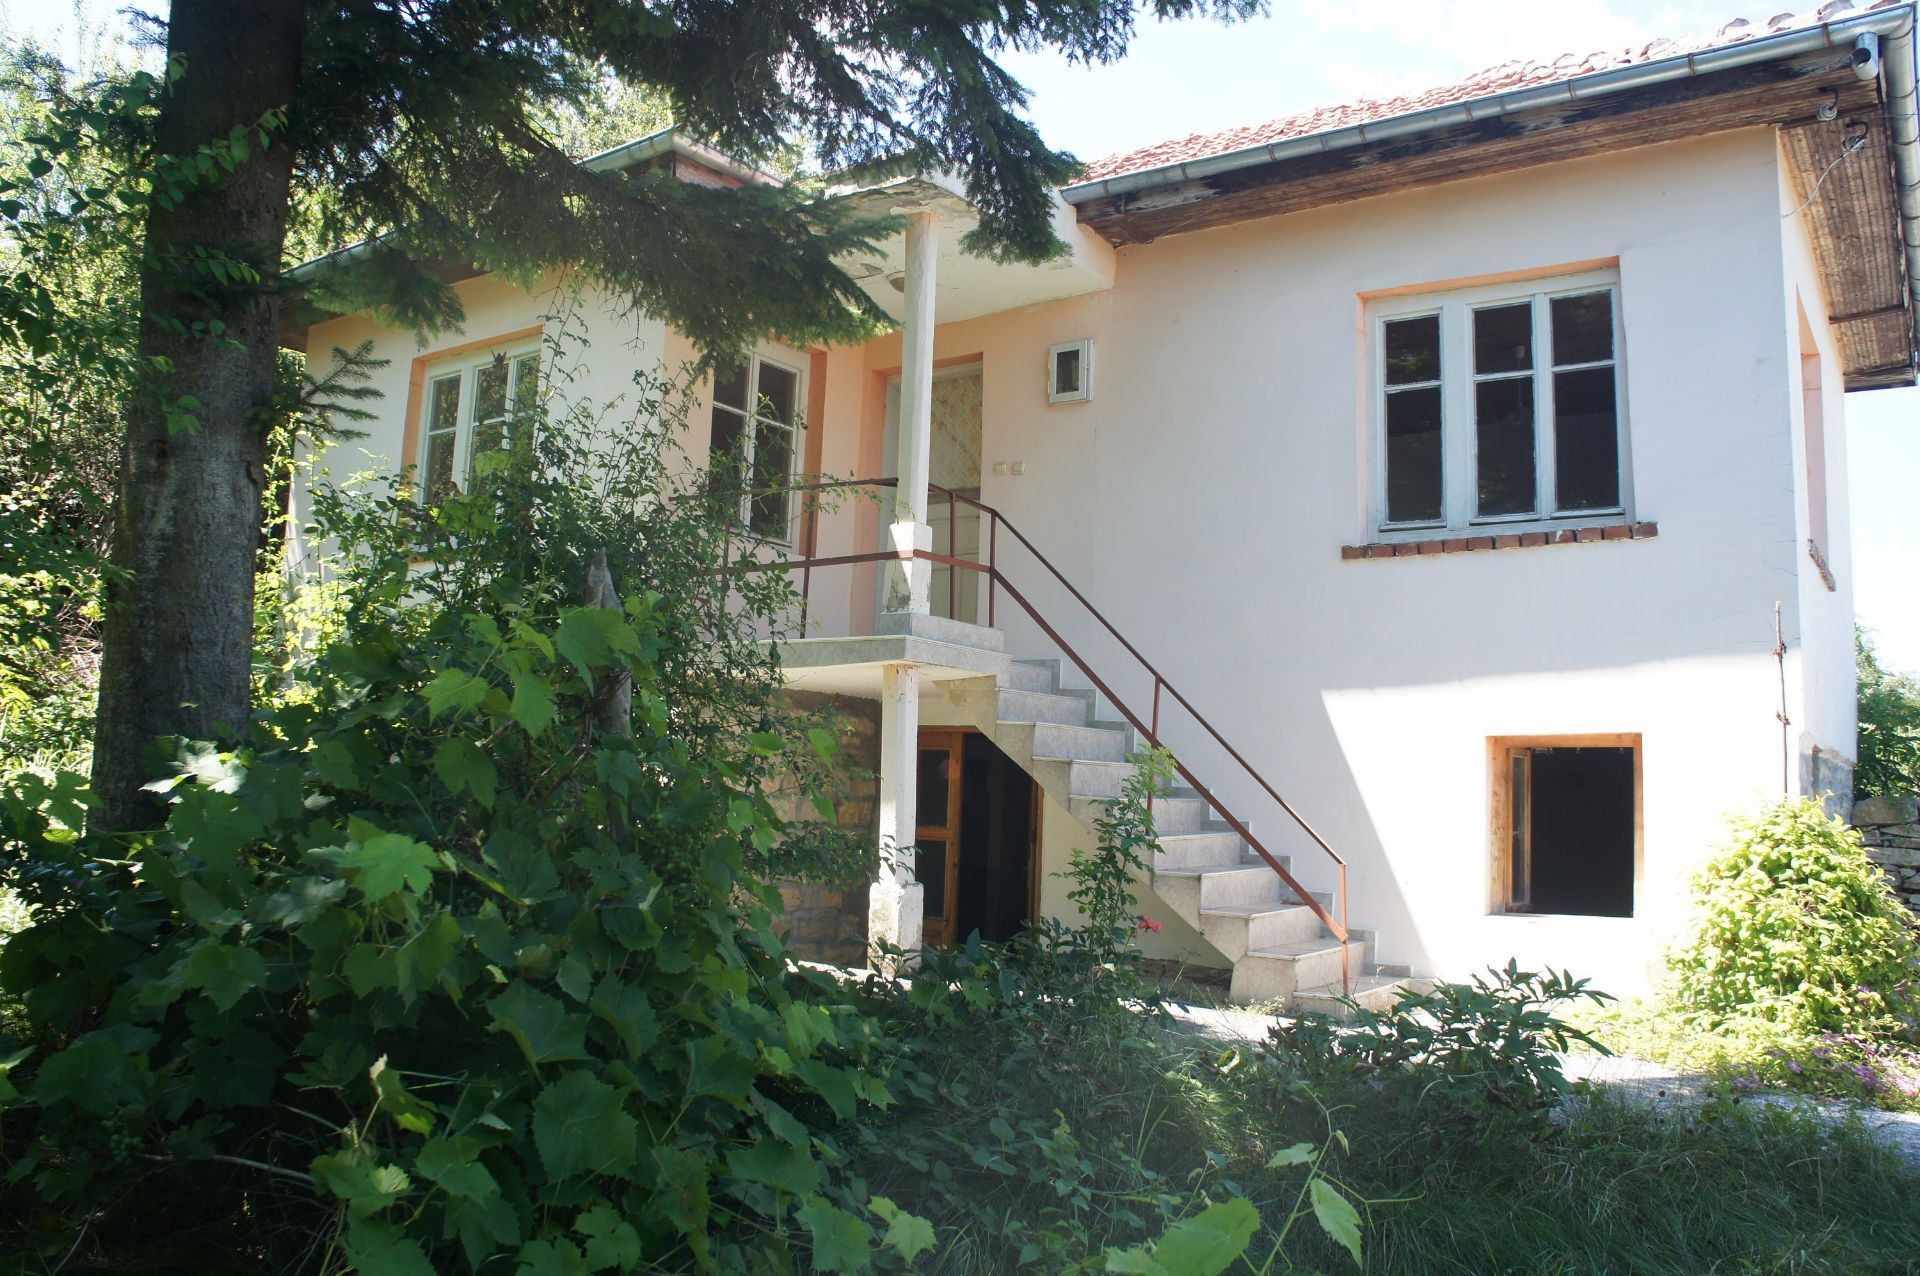 IMMACULATE Freehold Home and Land NR Veliko Tarnovo, Bulgaria - Image 3 of 29